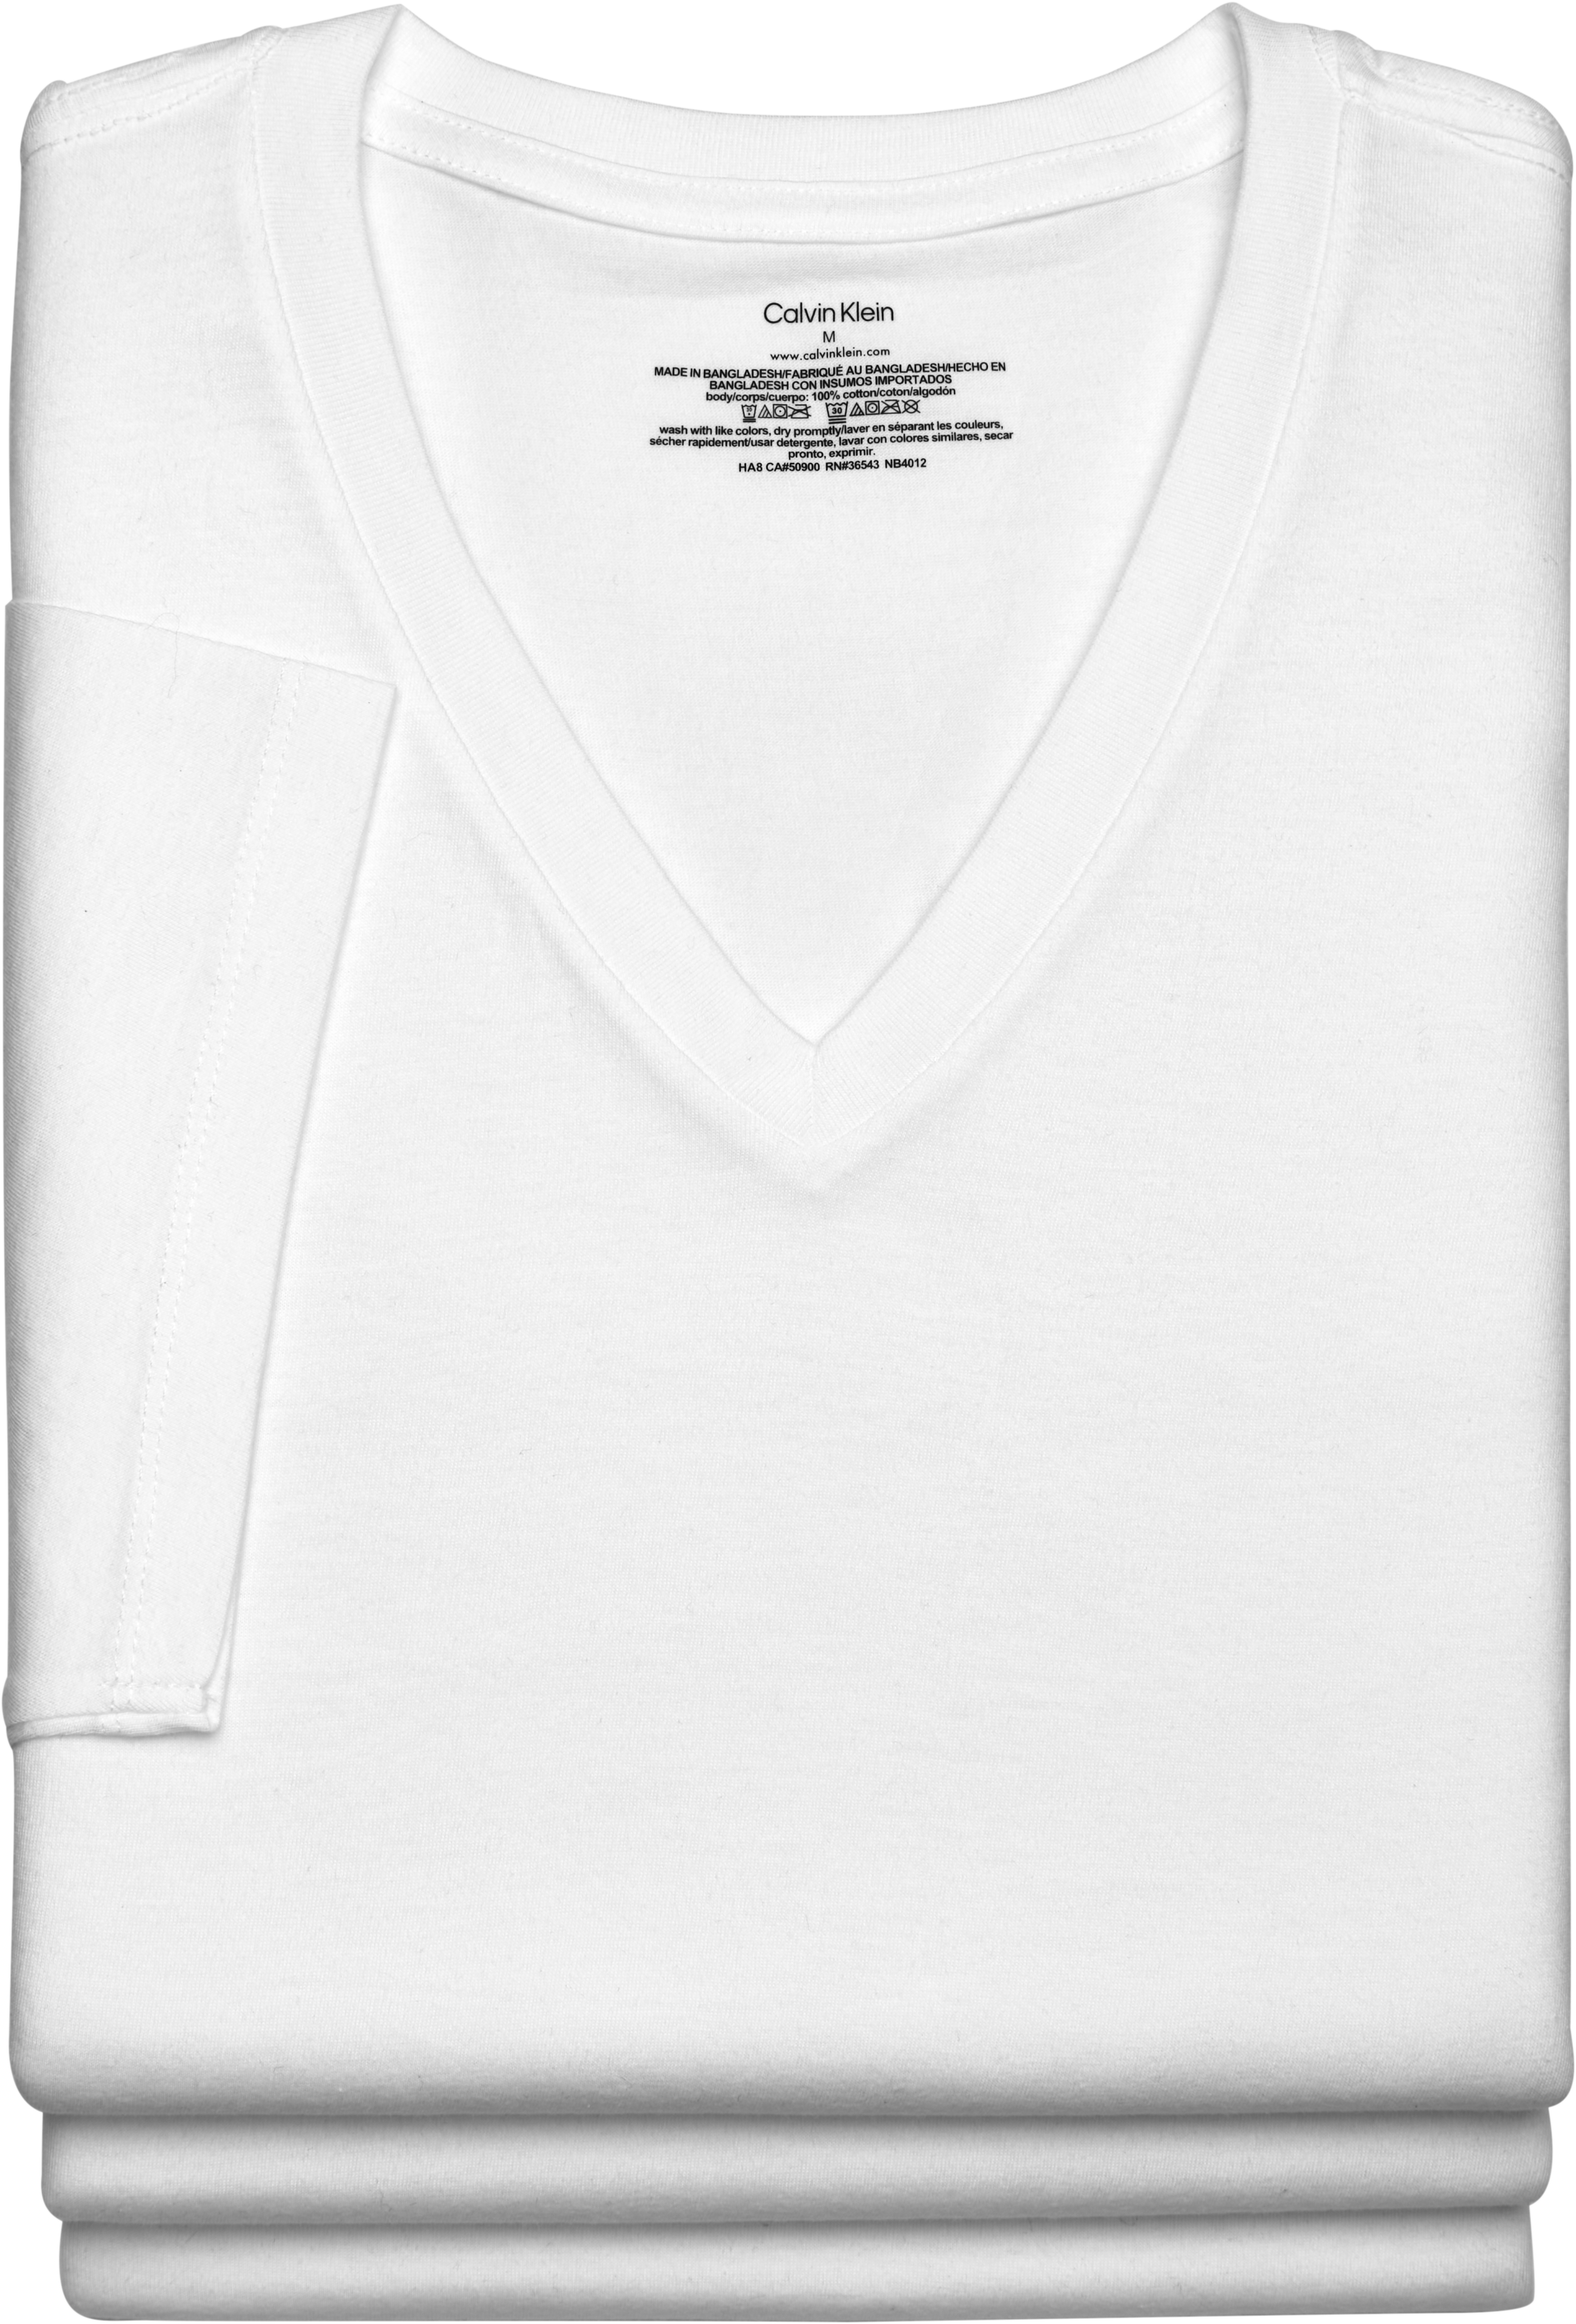 Calvin Klein V-Neck T-Shirt, 3-Pack, White